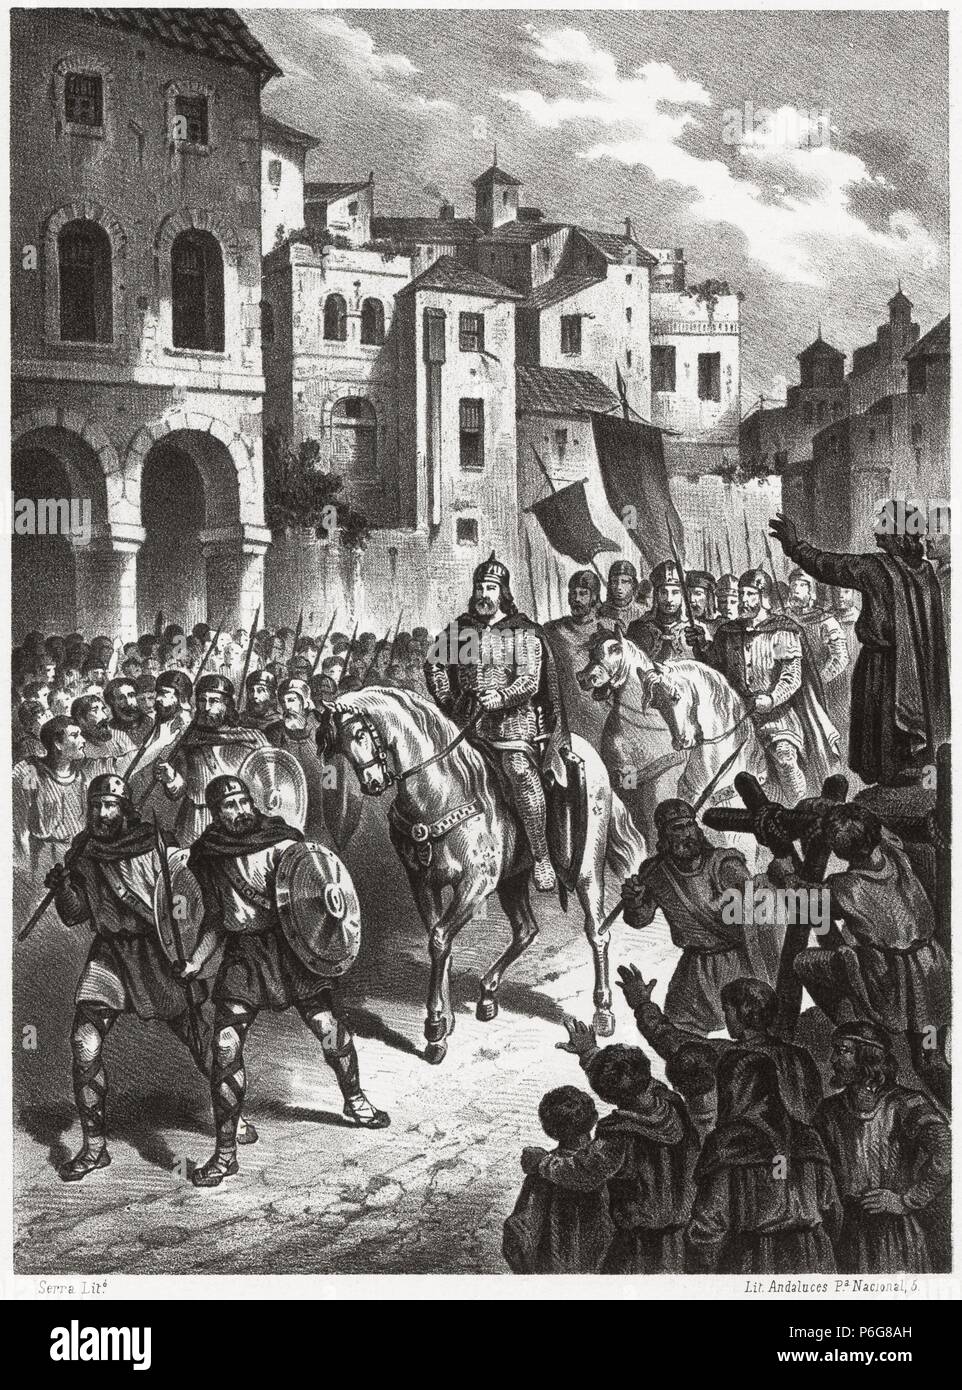 Historia de España. Entrada en Tarragona del Conde Berenguer Ramón II el fratricida (1053-1097) en 1086, camino de Valencia. Grabado de 1872. Stock Photo